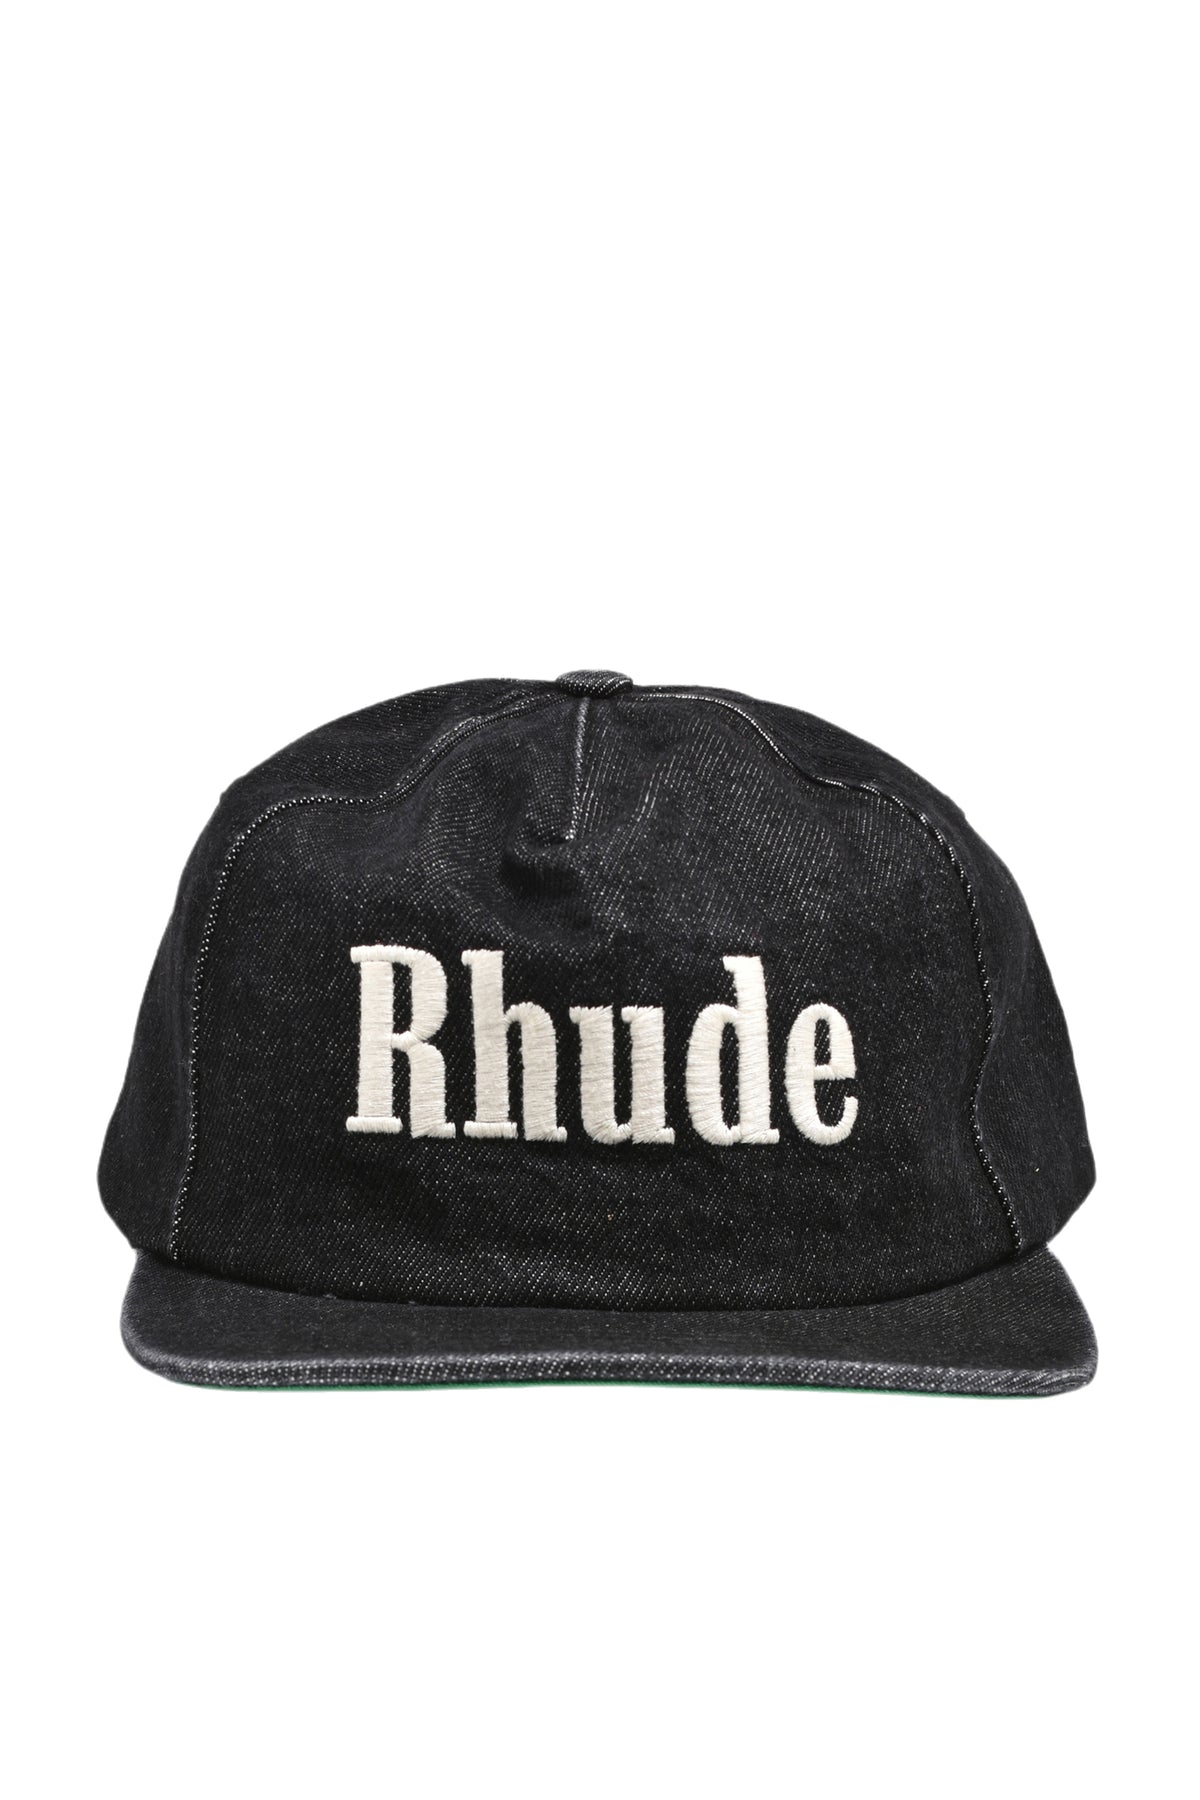 Rhude logo cap是非